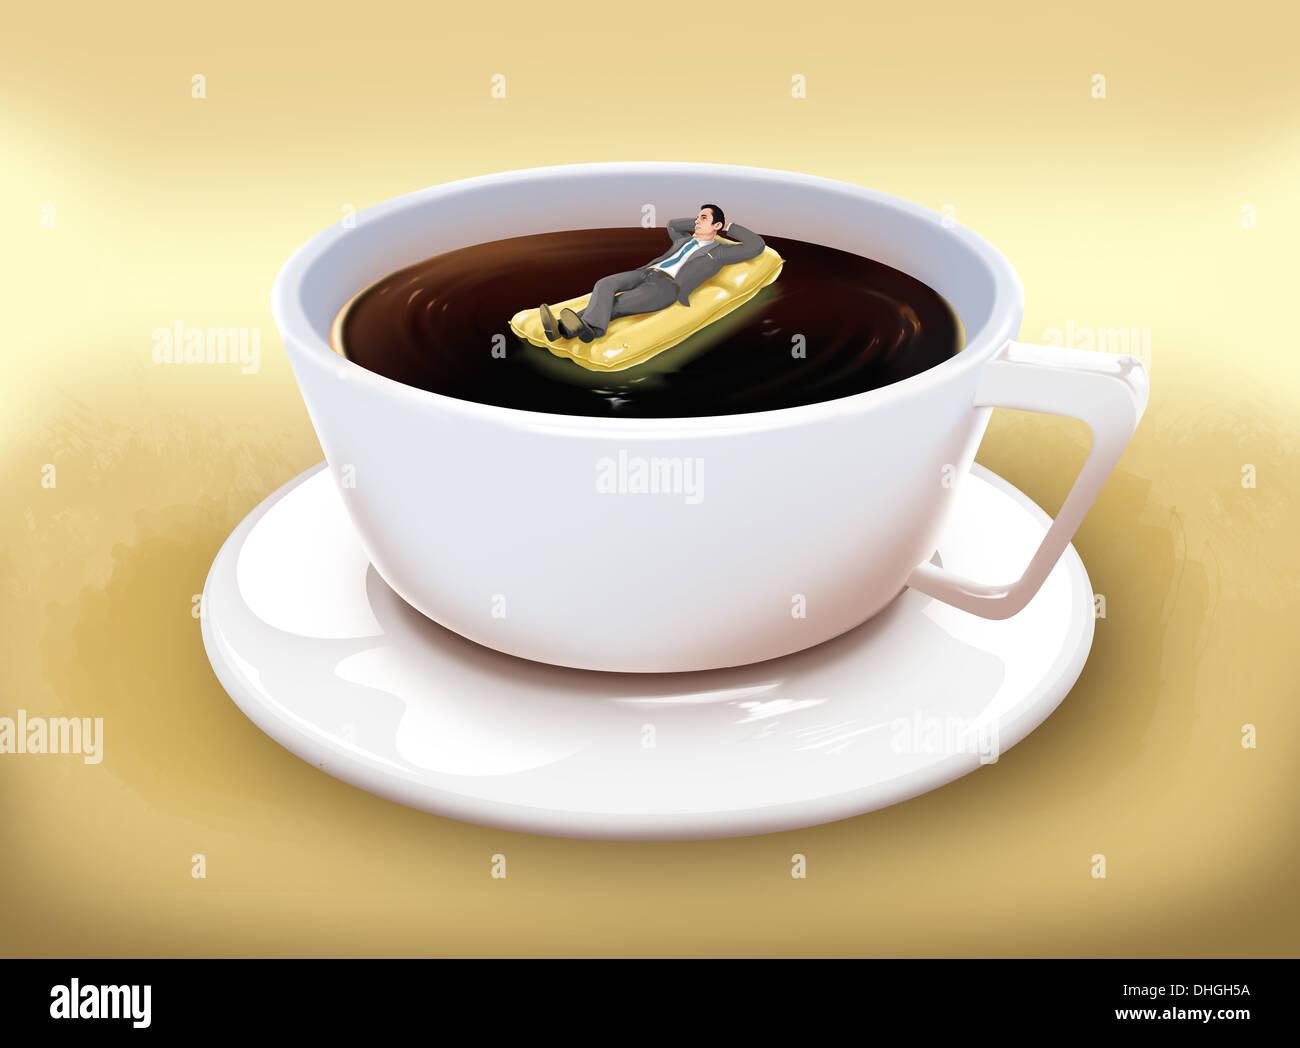 Image d'illustration de businessman lying on raft dans Coffee cup représentant les entreprises maison de vacances Banque D'Images